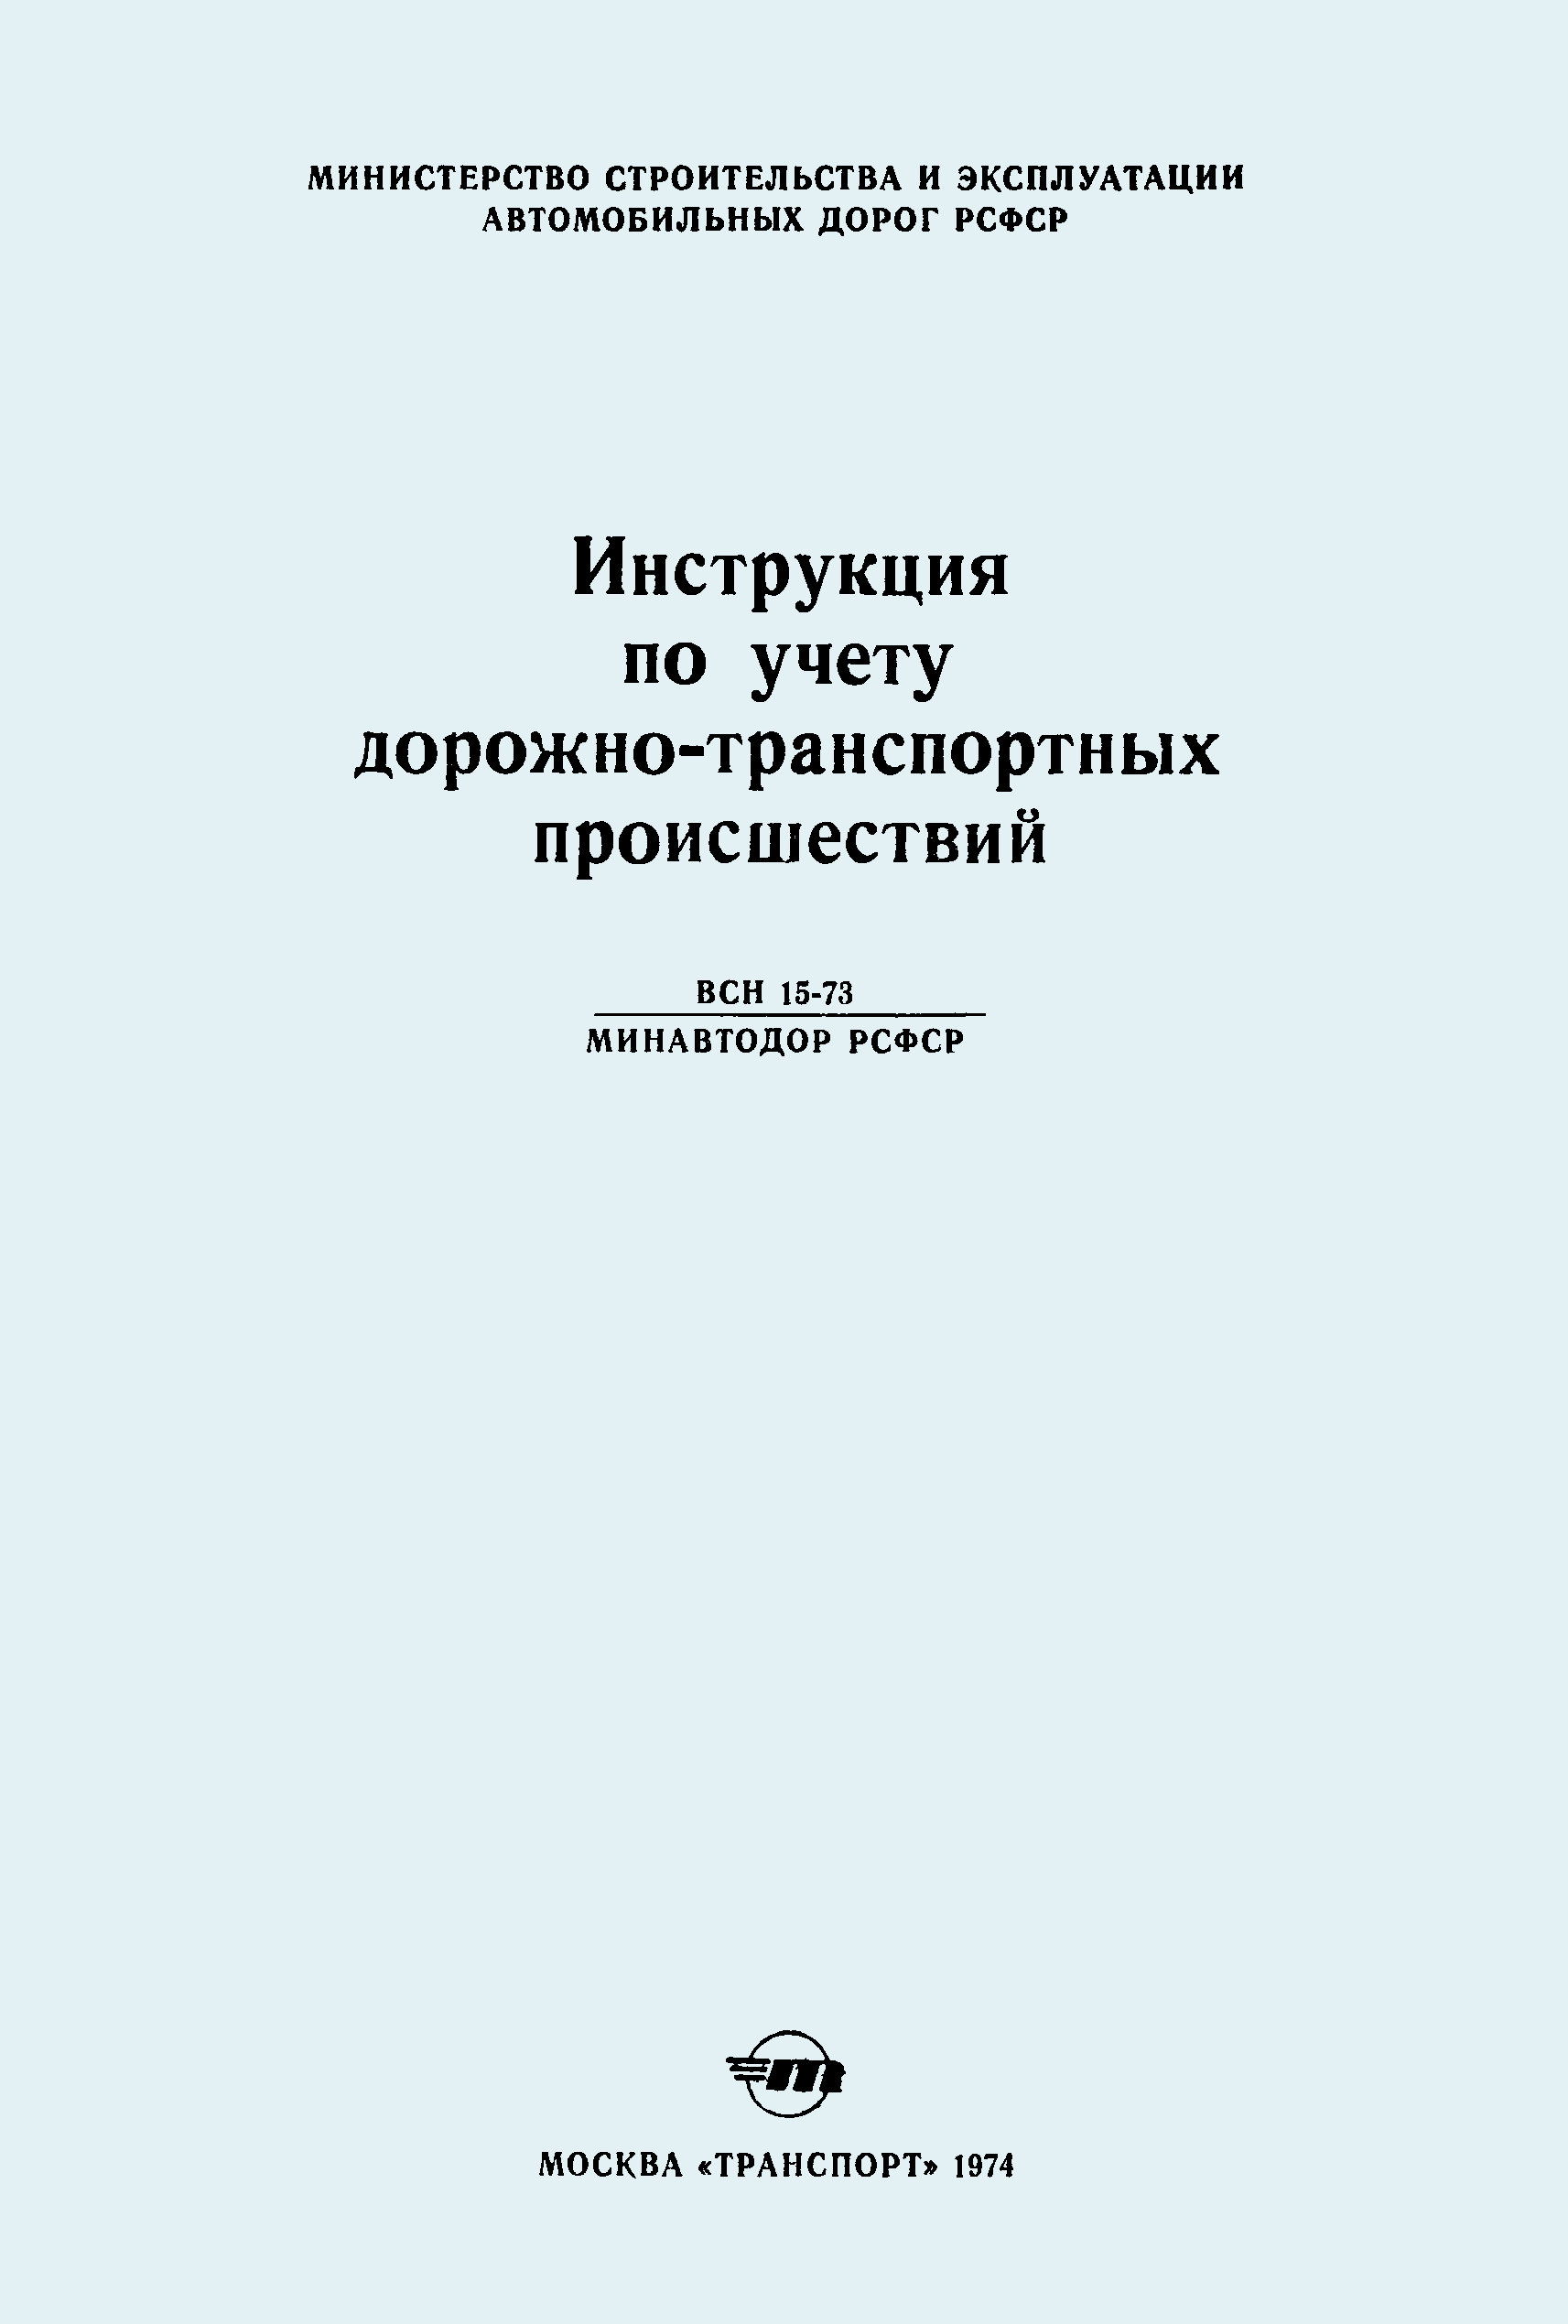 ВСН 15-73/Минавтодор РСФСР